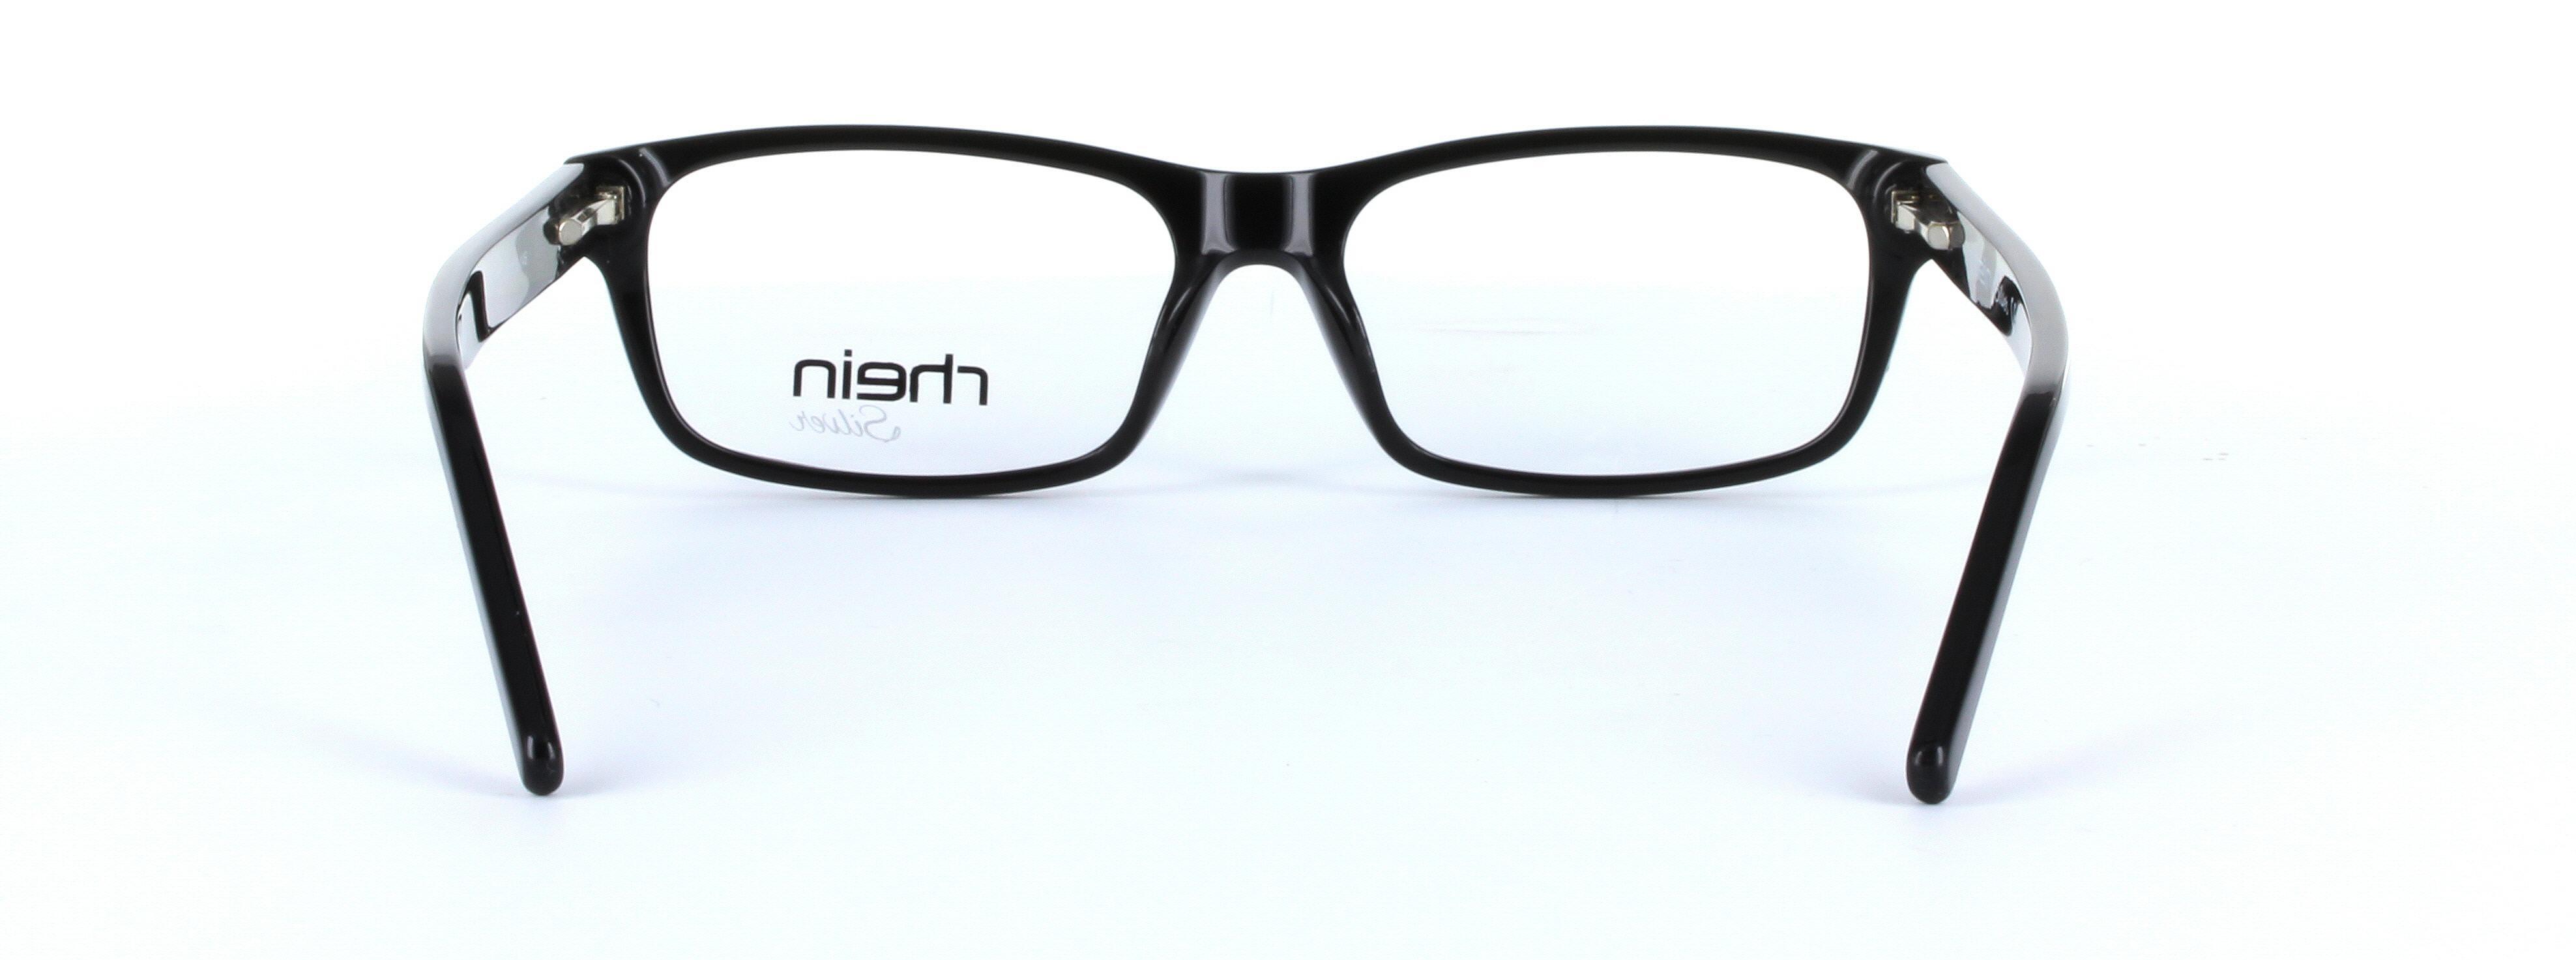 Franco Brown Full Rim Rectangular Acetate Glasses - Image View 3